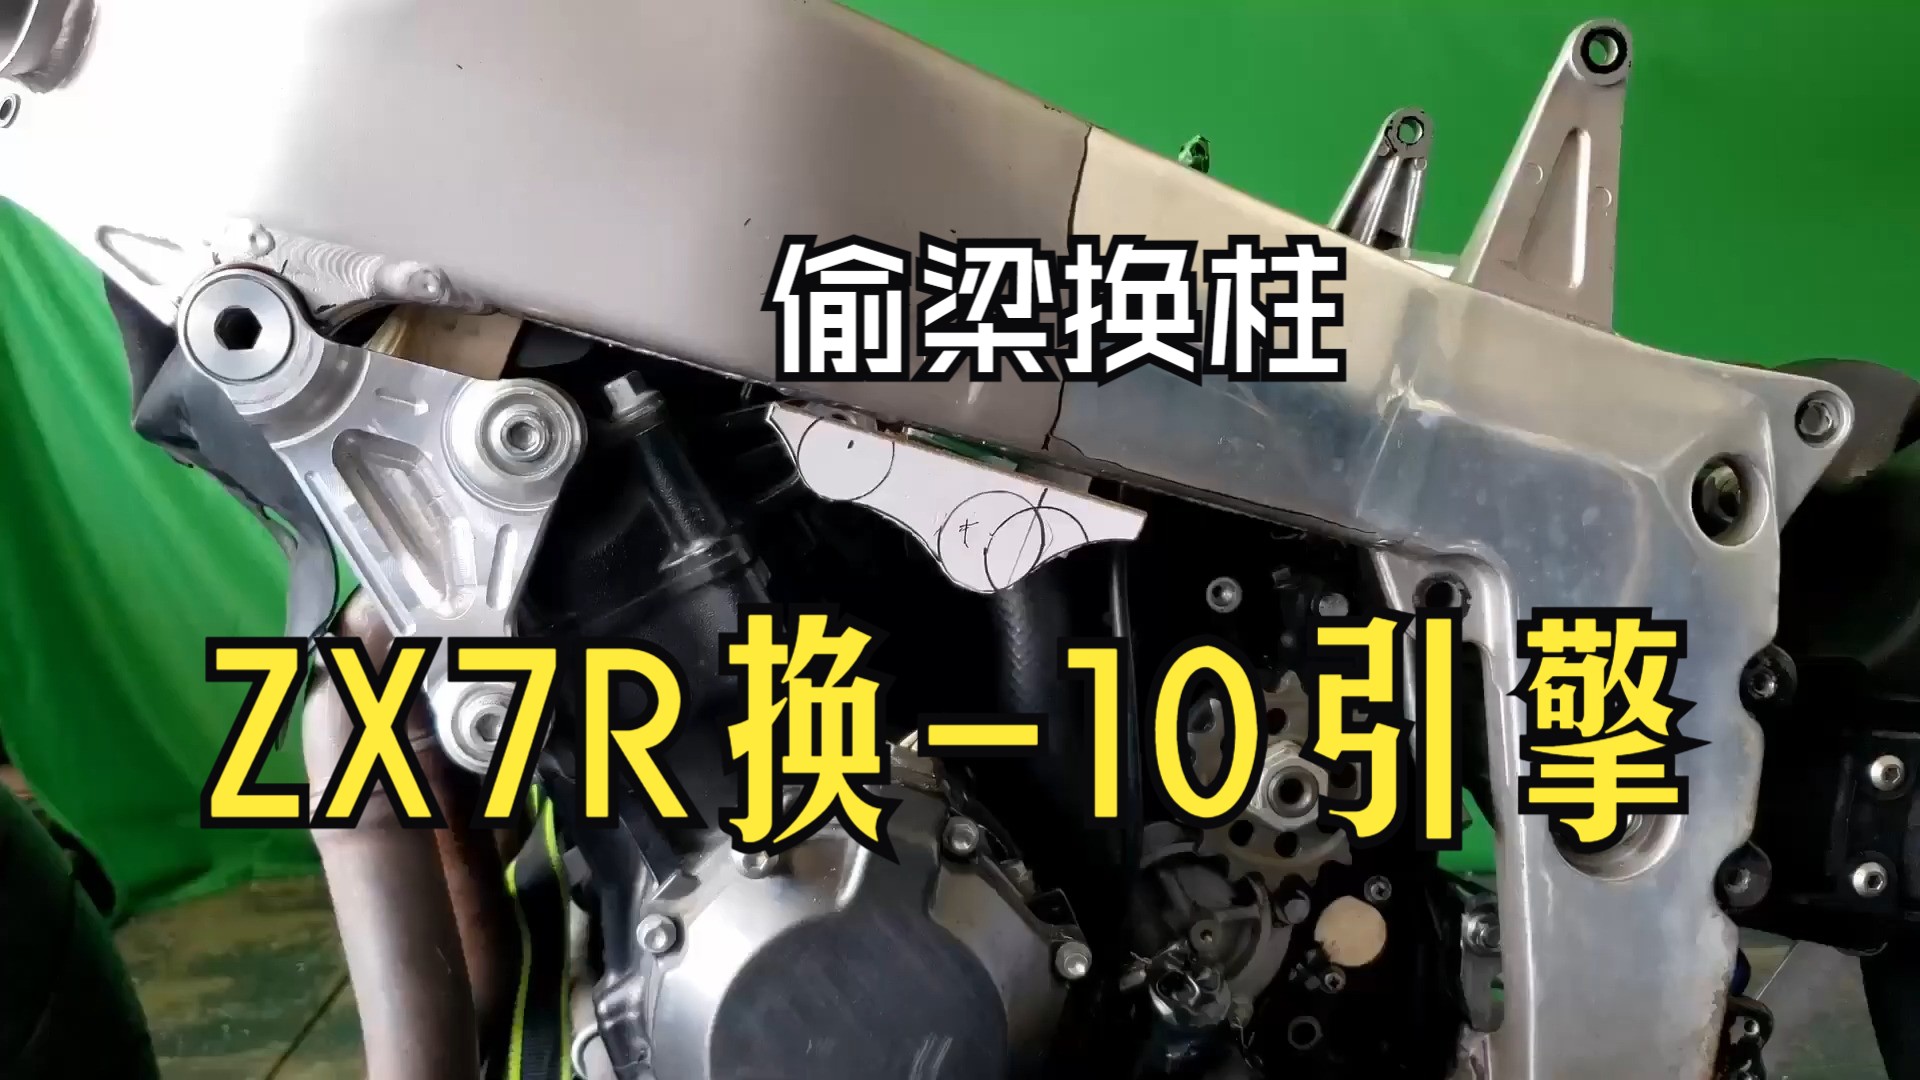 【将 ZX10R 发动机塞入 1994 年款 ZX7r 车架导轨之间】